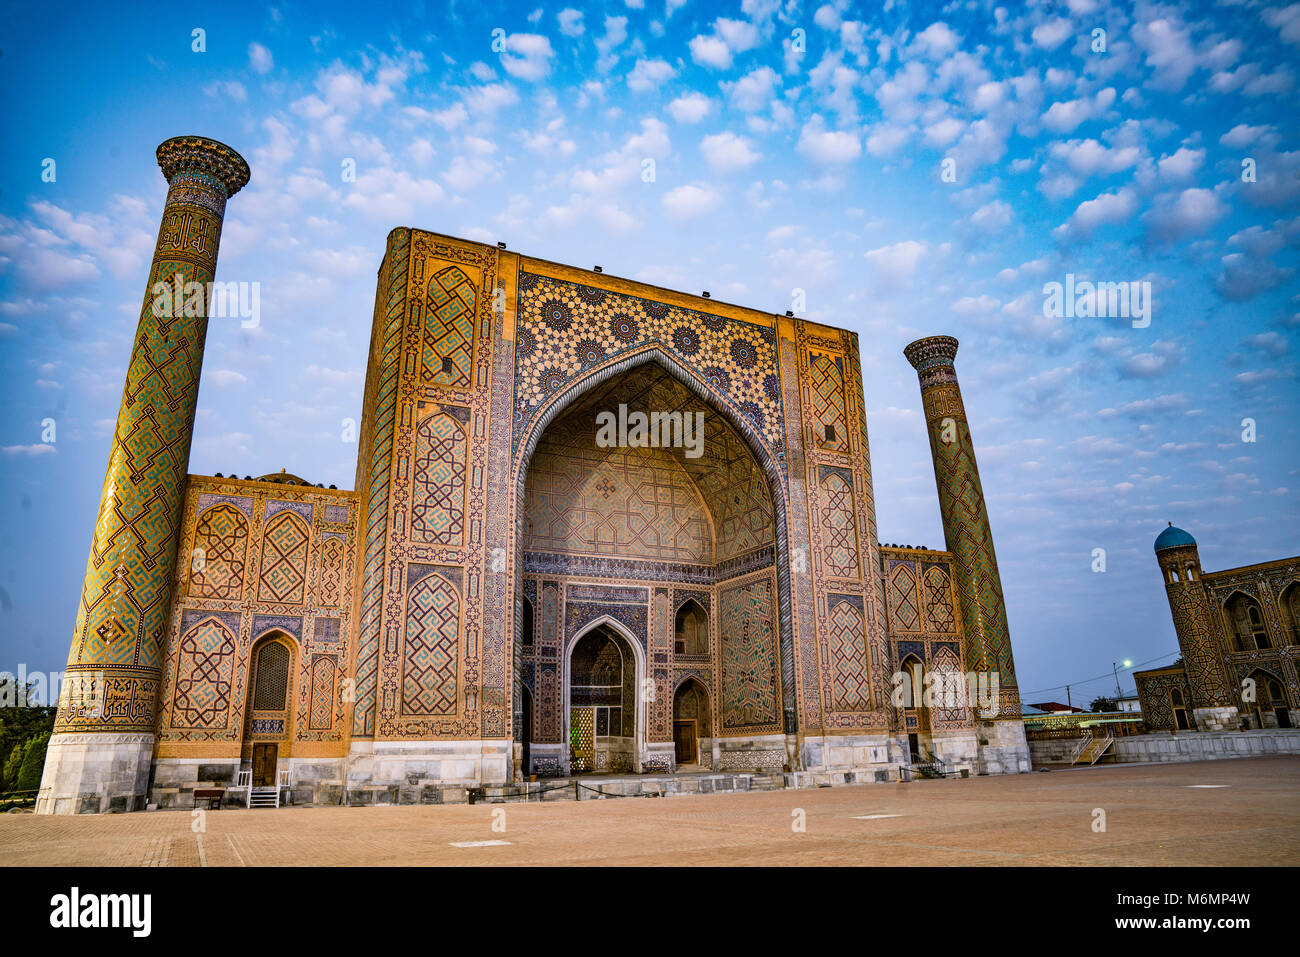 Der Registan, Samarkand, Usbekistan, in Zentralasien, Älteste erhaltene medrassahs in der Welt. Stockfoto